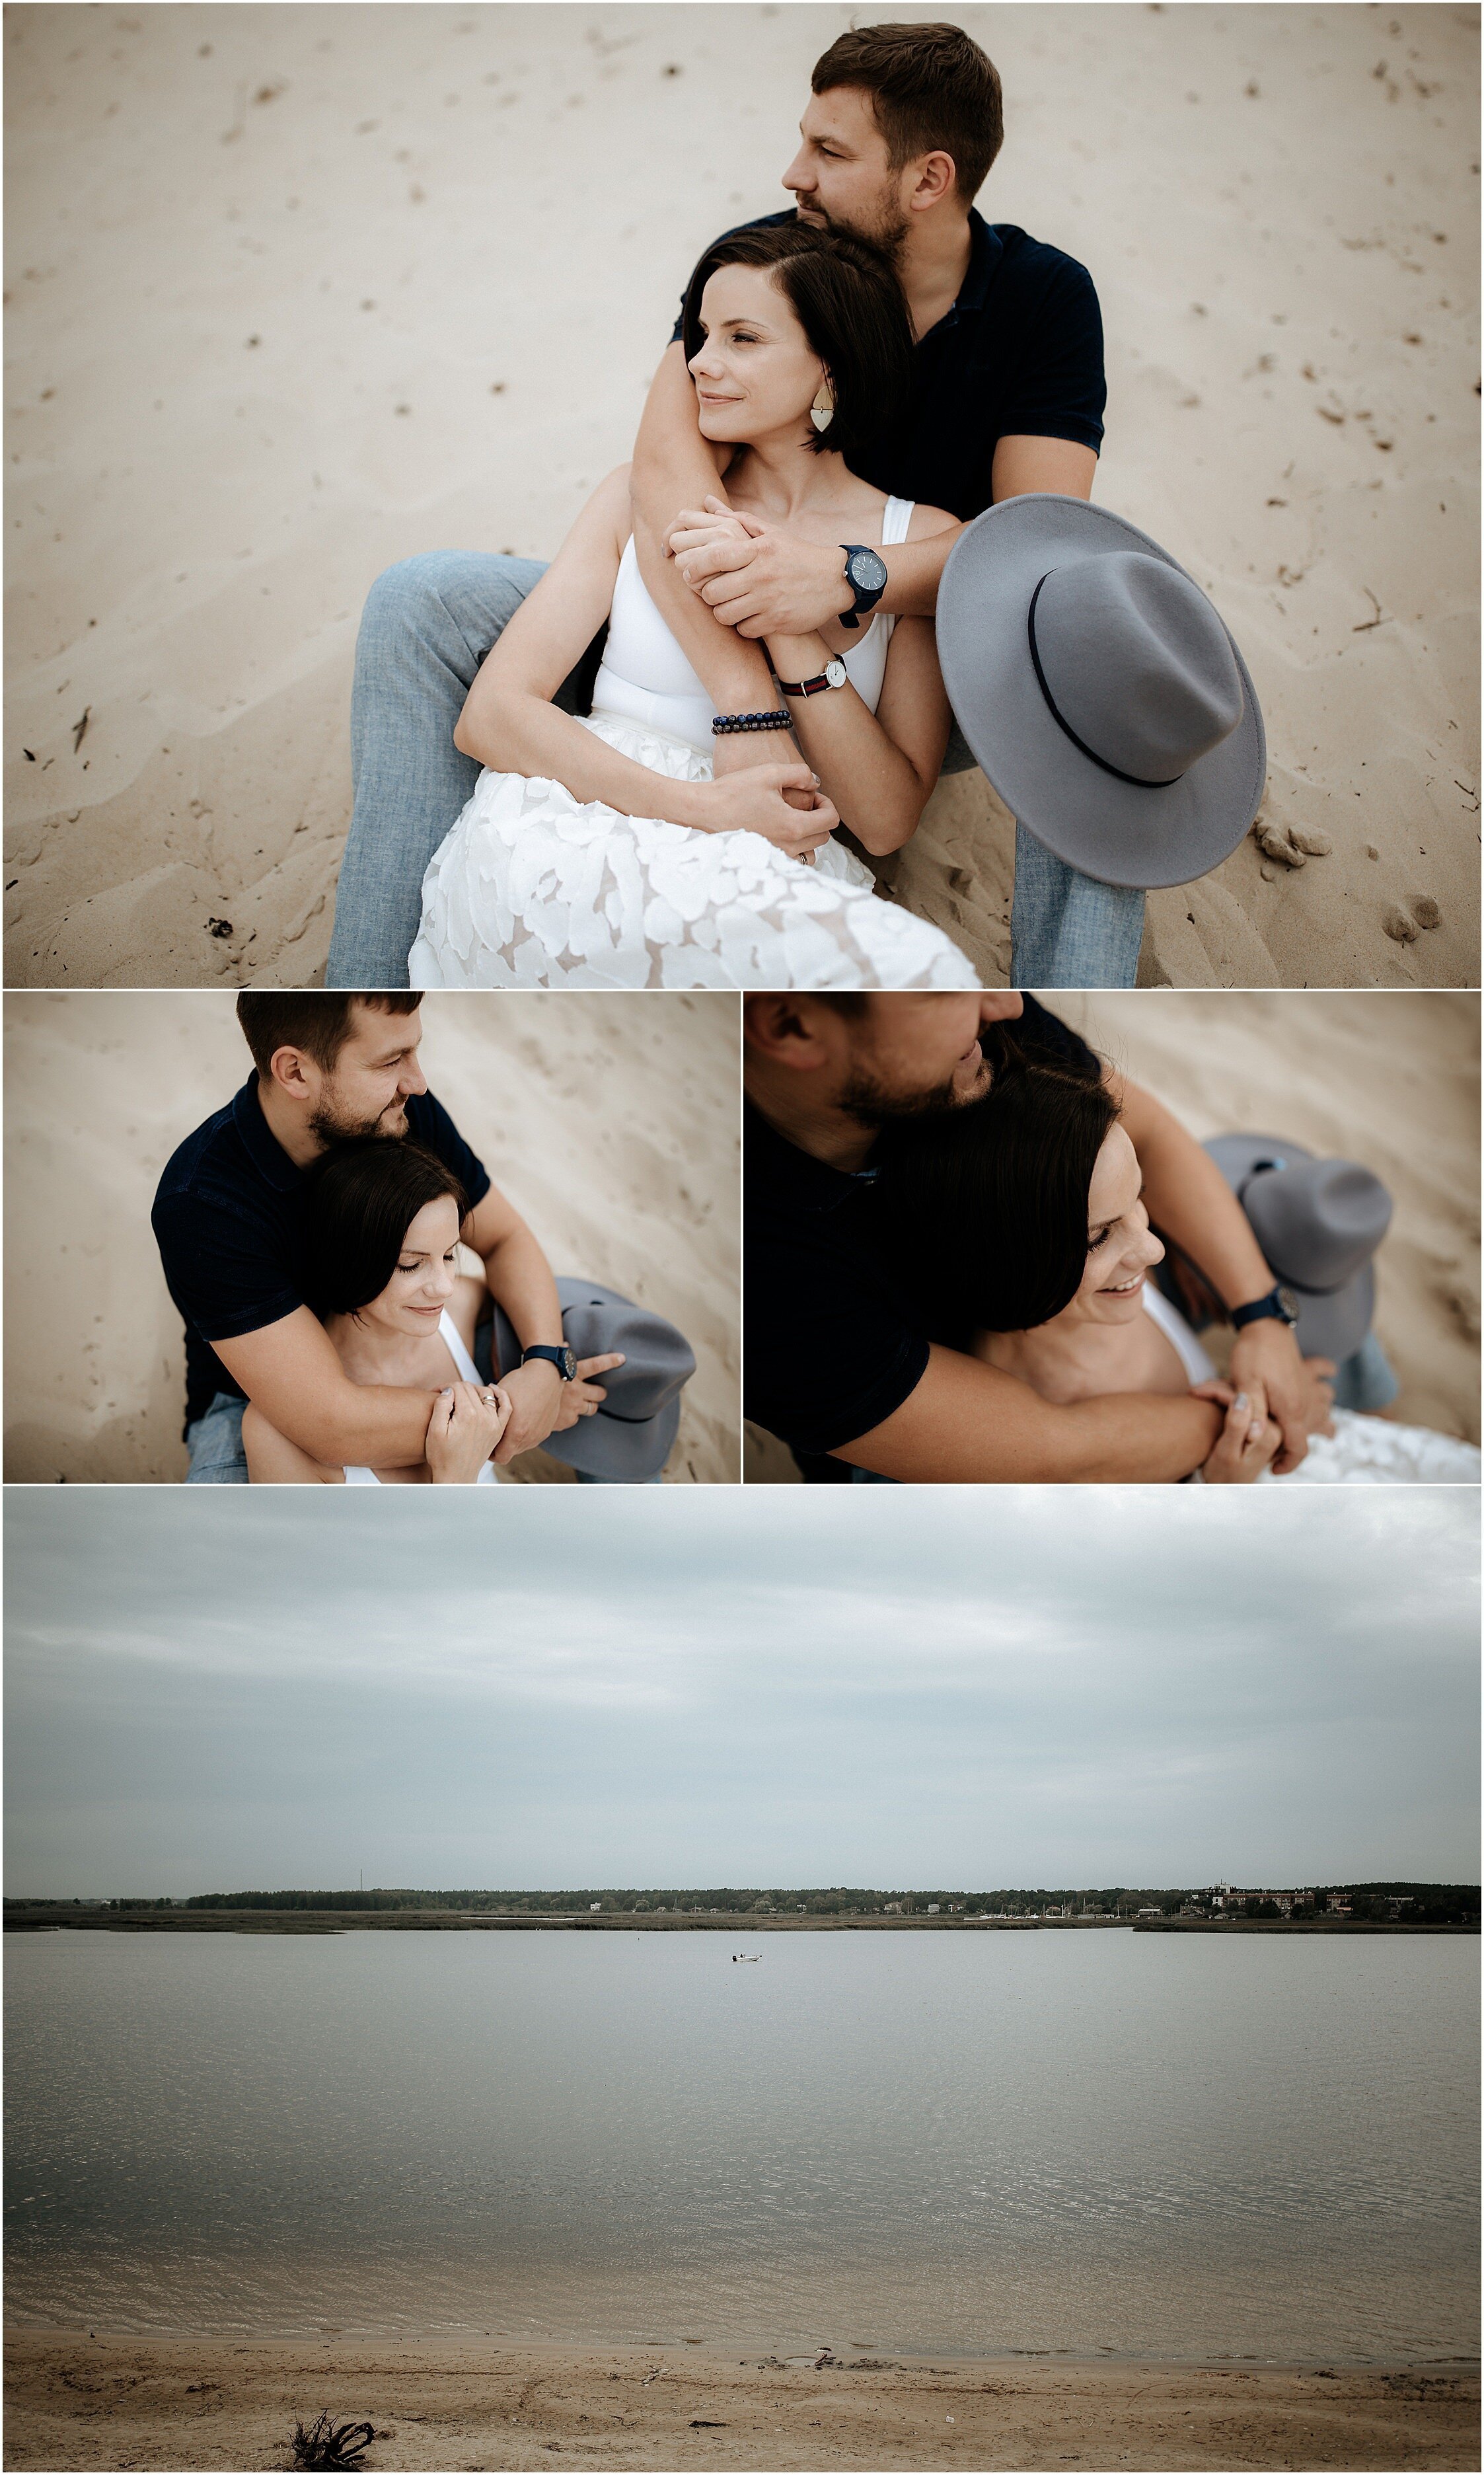 Zanda+Auckland+wedding+photographer+romantic+couple+portrait++white+sand+dunes+Europe+Latvia+New+Zealand_3.jpeg